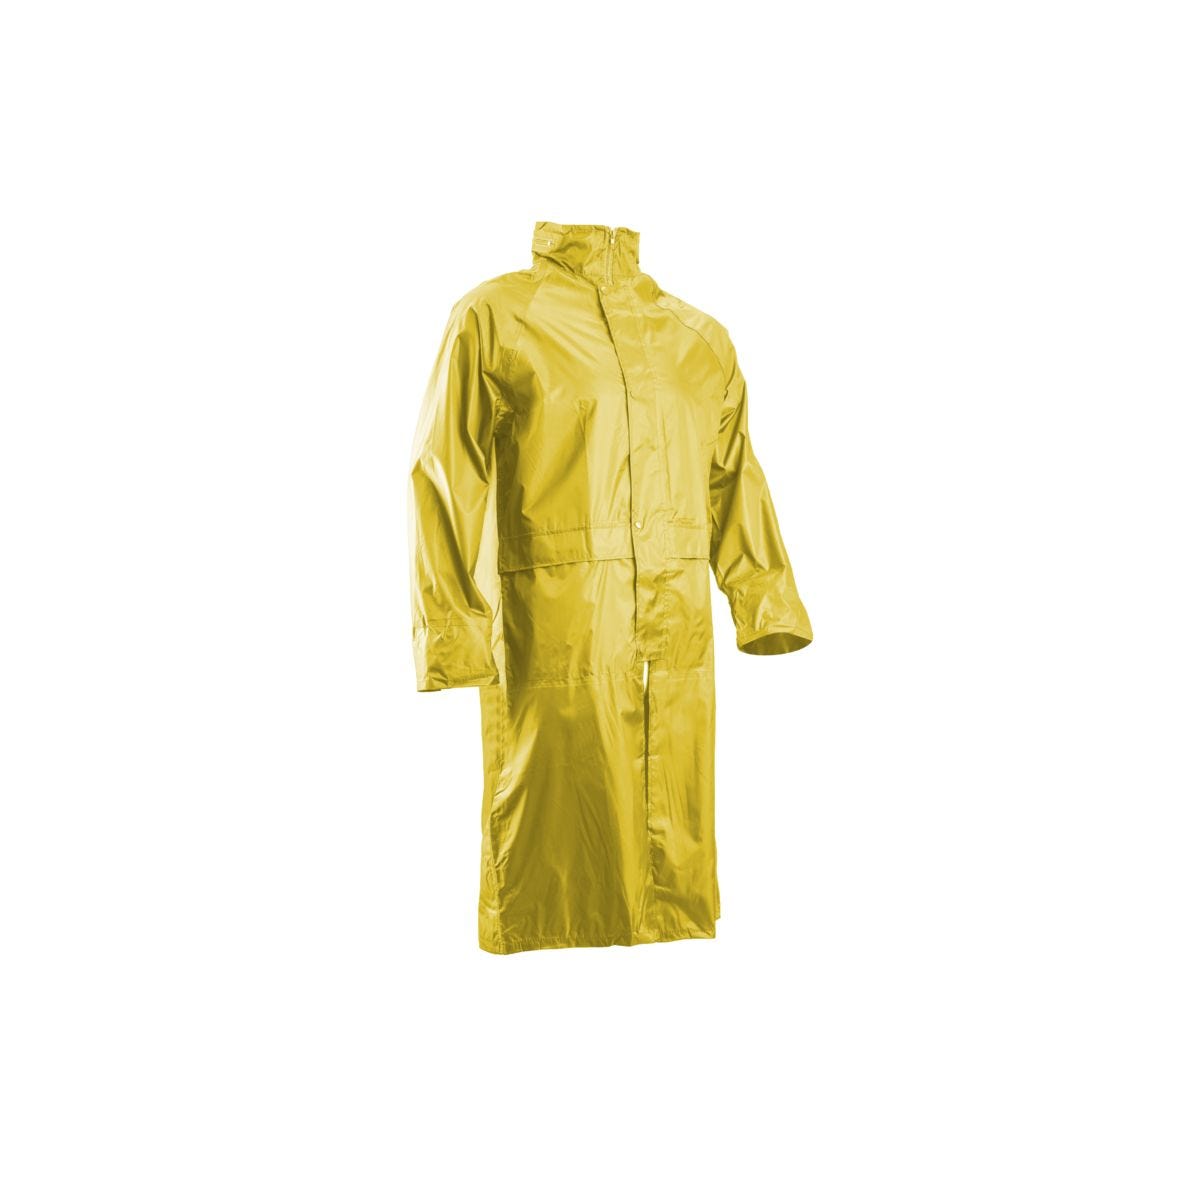 Manteau de pluie PVC, jaune, 185g/m² - COVERGUARD - Taille L 0